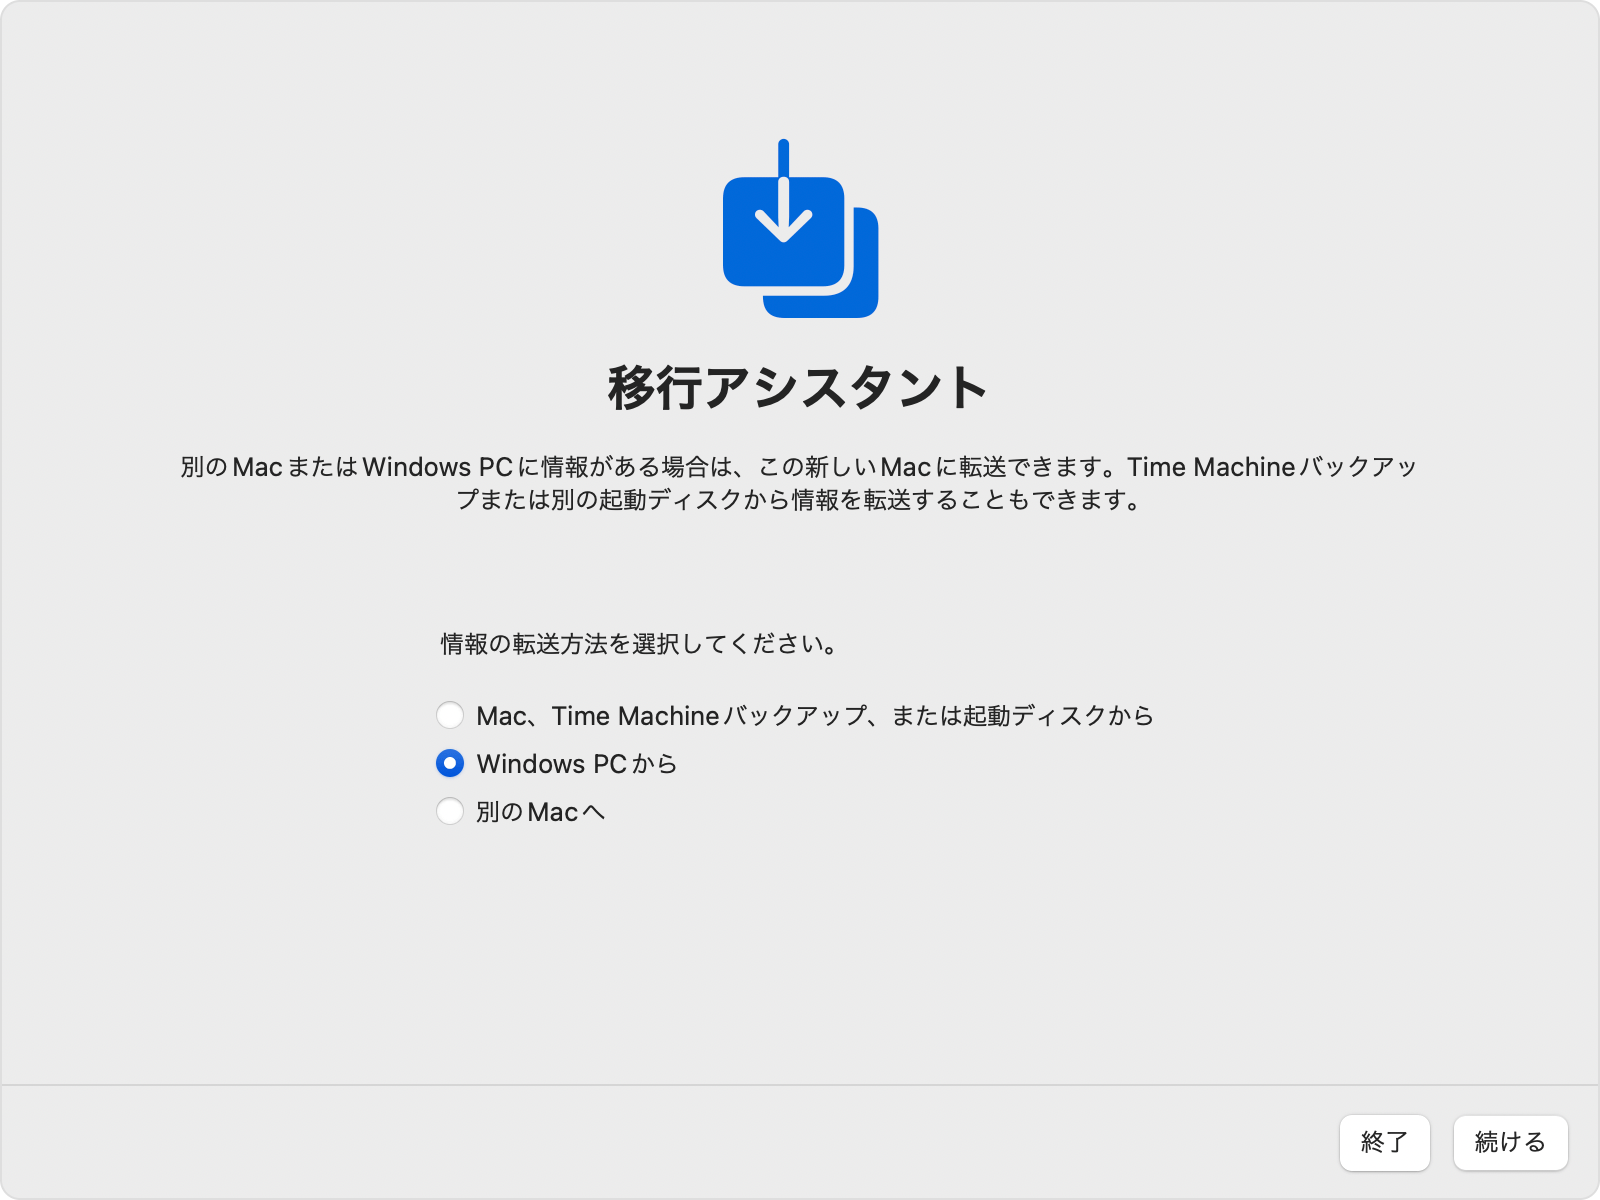 Macから移行アシスタントを開いて「Windows PC から」を選択